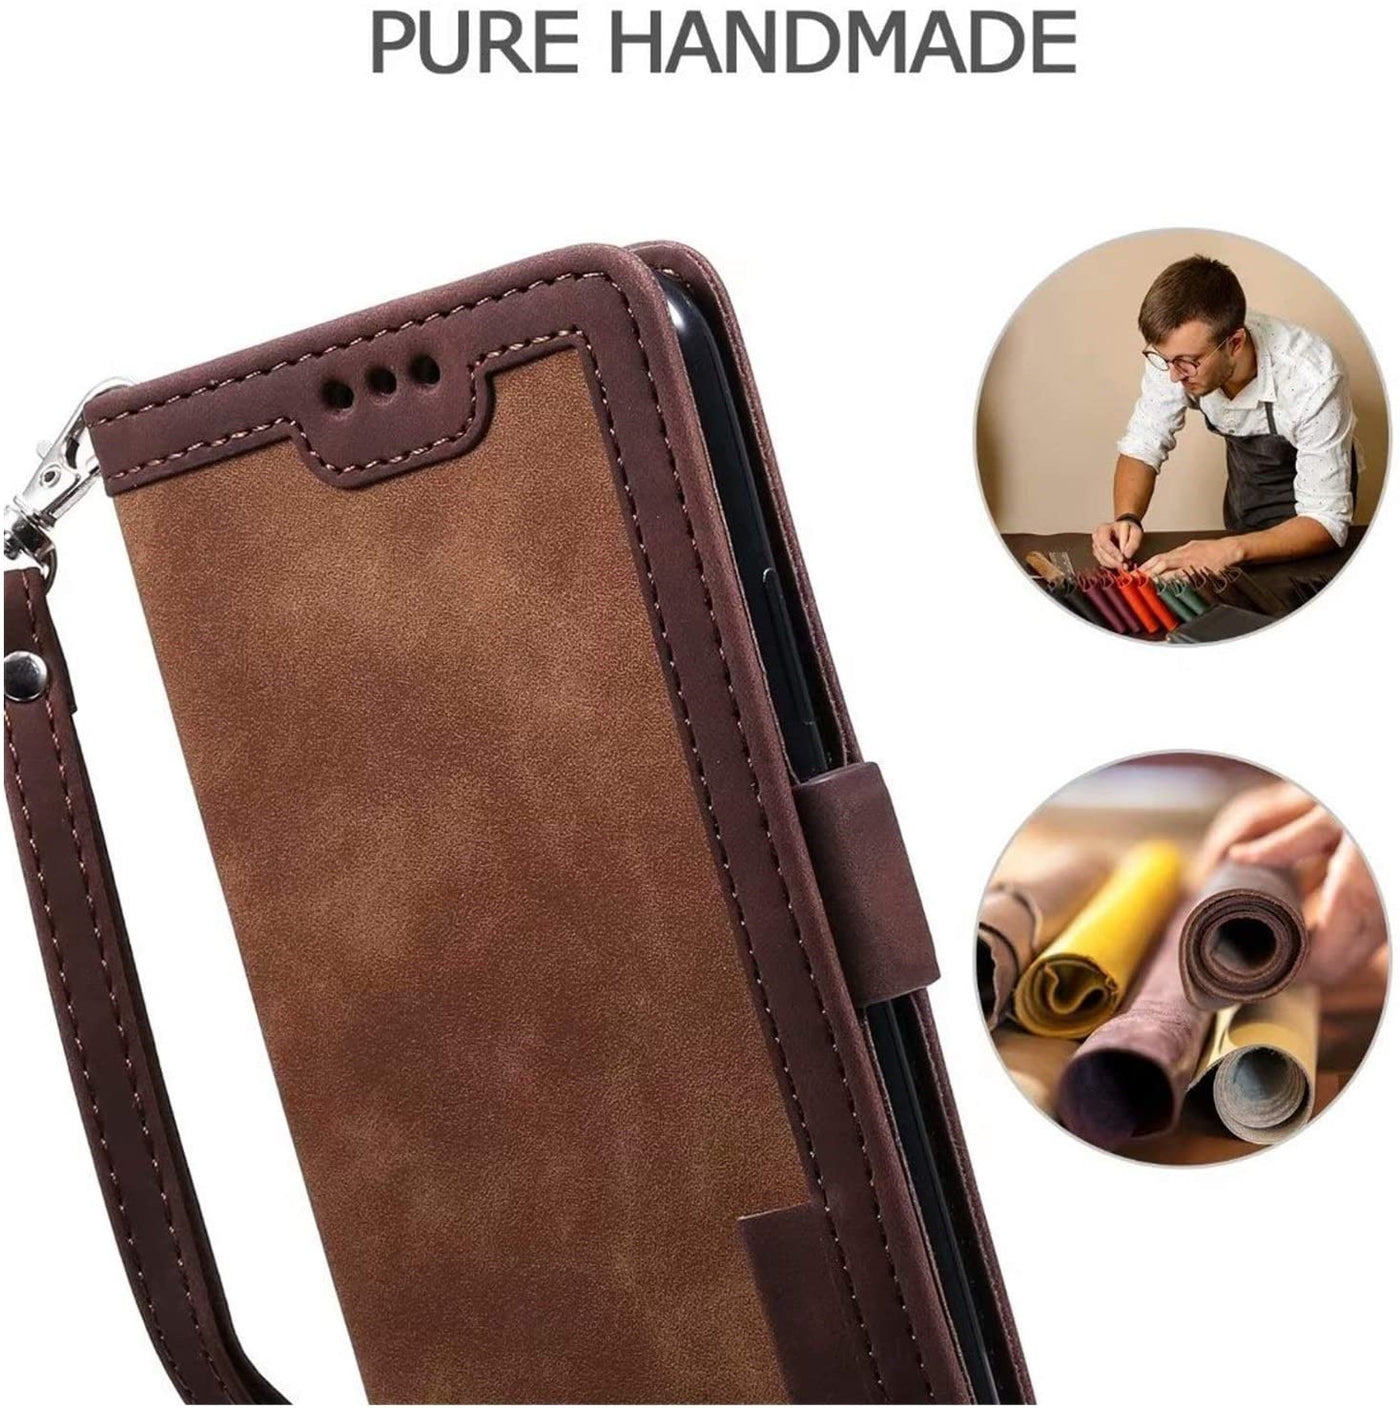 Apple iPhone 8 Plus high quality premium and unique designer leather case cover